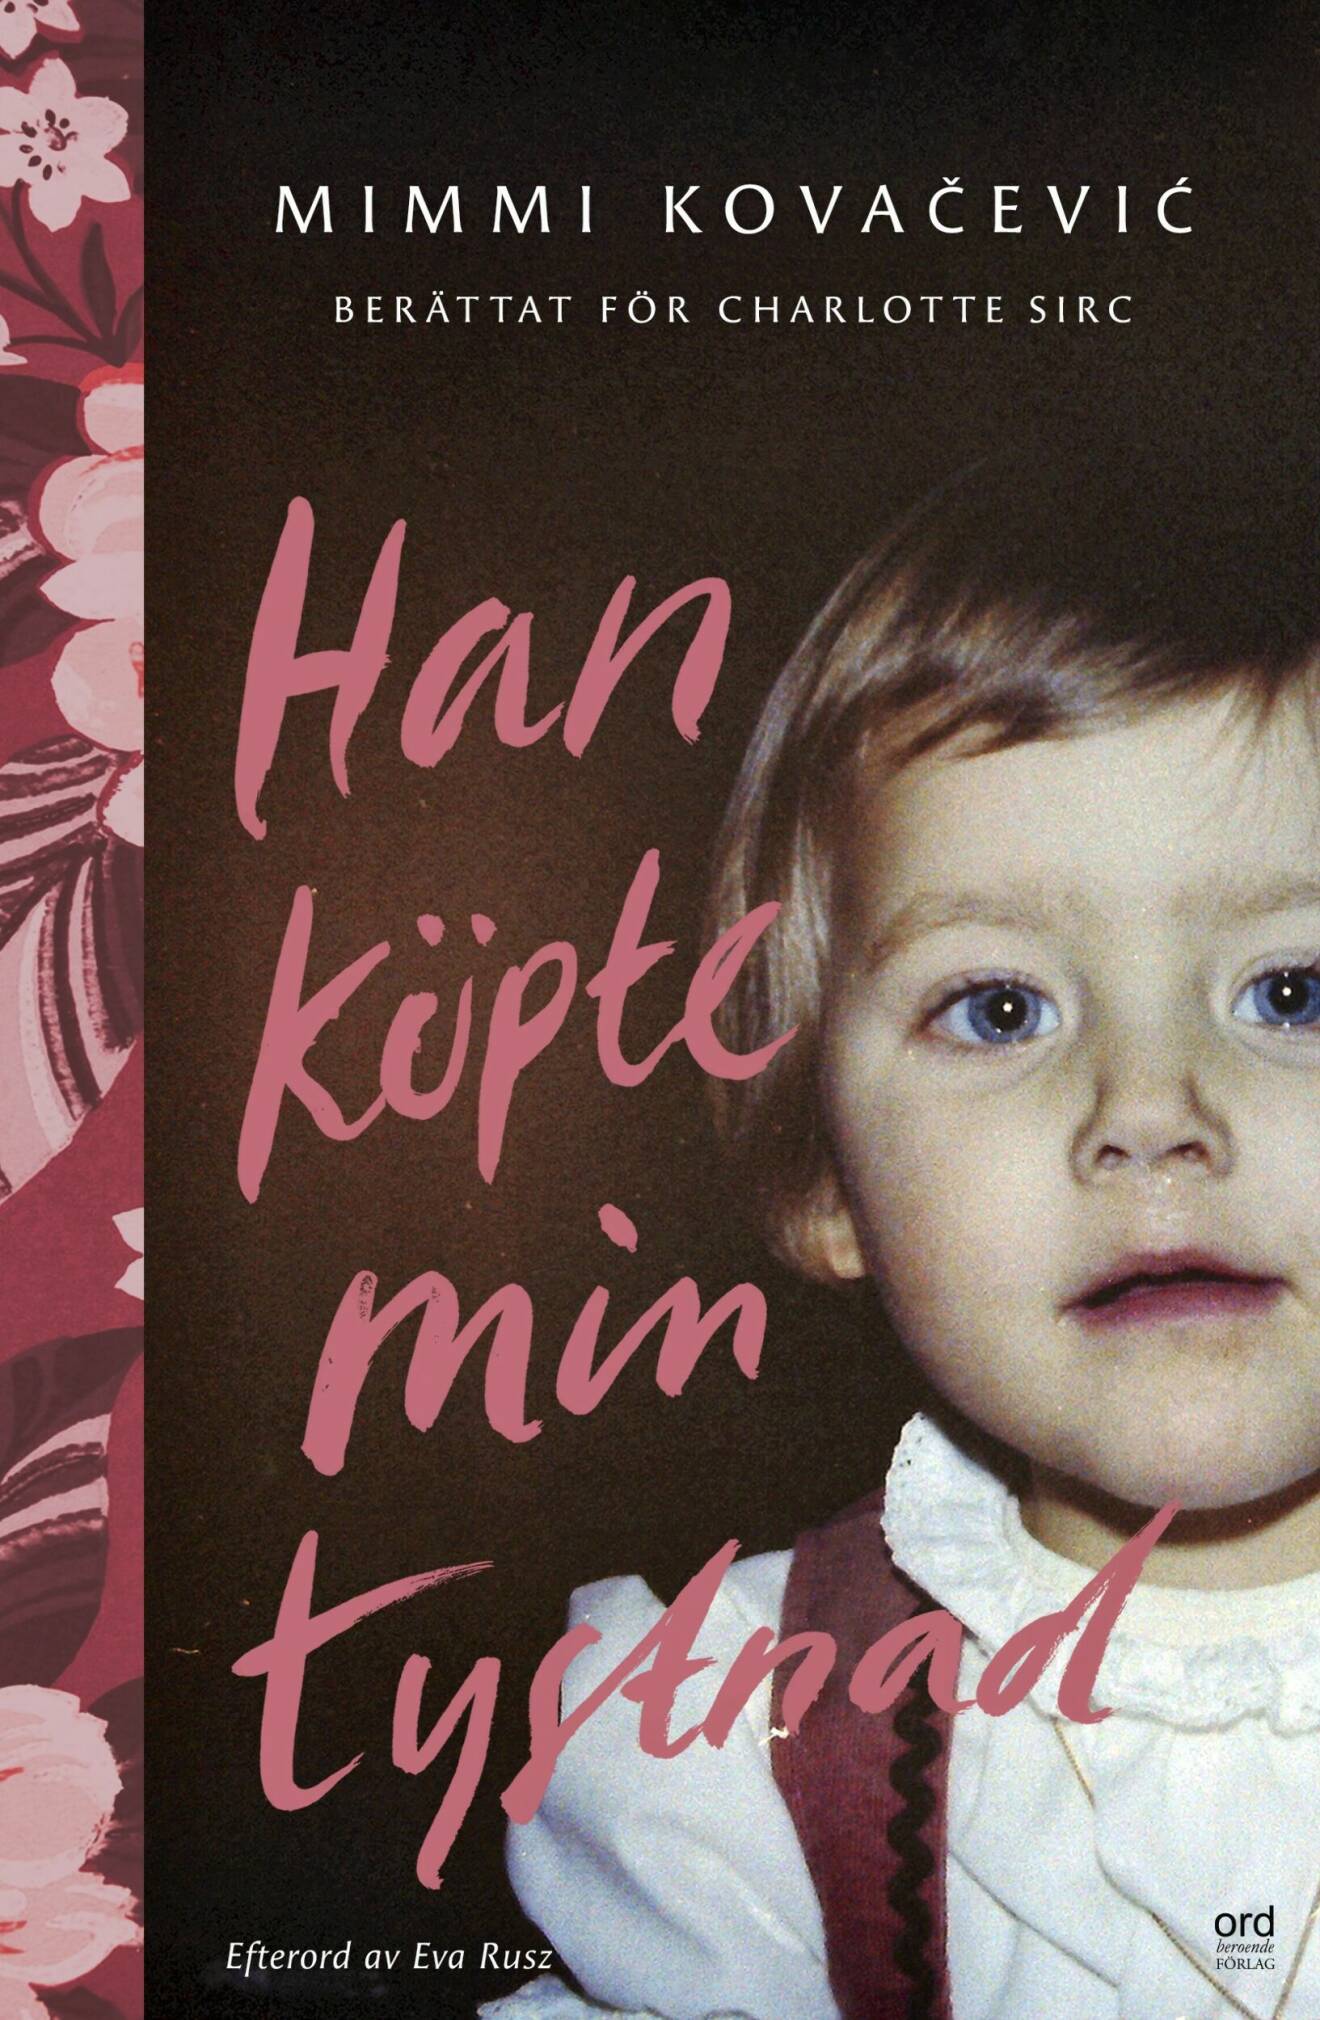 Omslaget på Mimmis bok med liten allvarliog flicka.